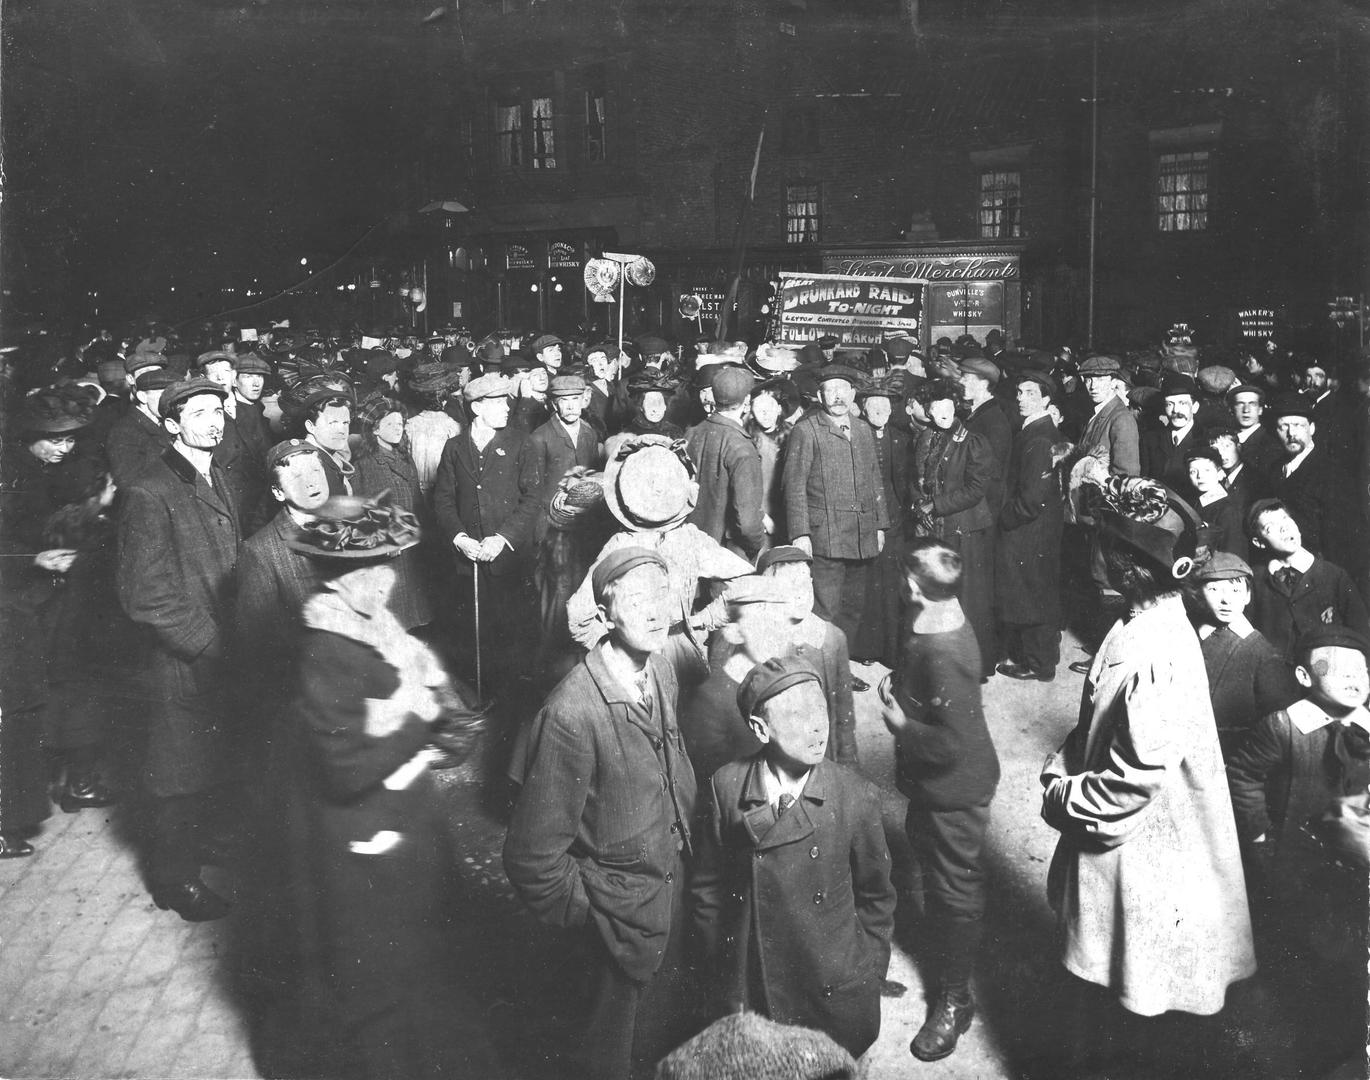 ‘Drunkards’ Raid,’ Leyton, east London, early twentieth century